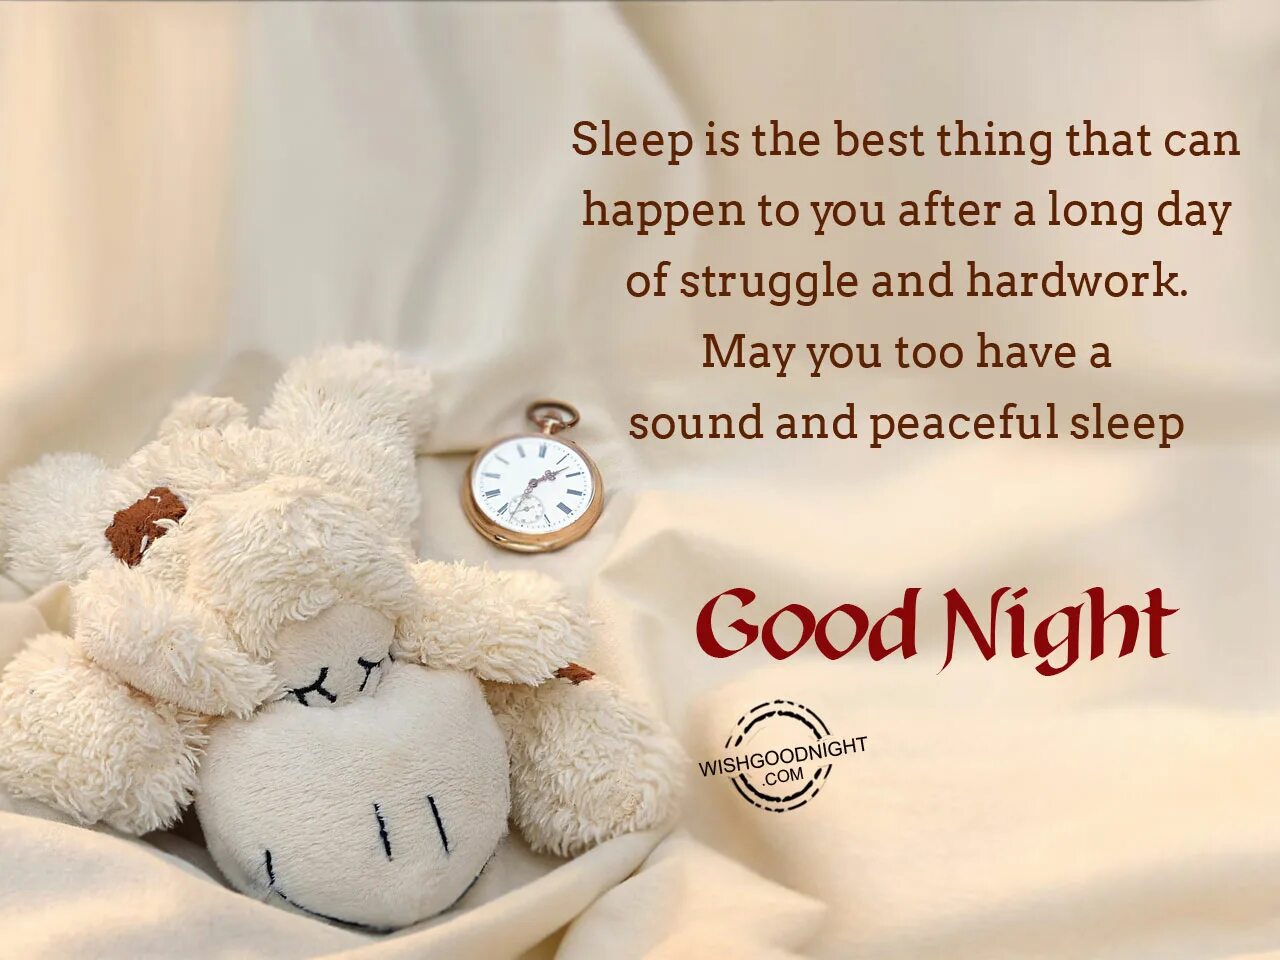 Sleep well 1 hour. Good Night картинки. Sleep well картинки. Good Night Sleep well. Sleep well картинки good Night.